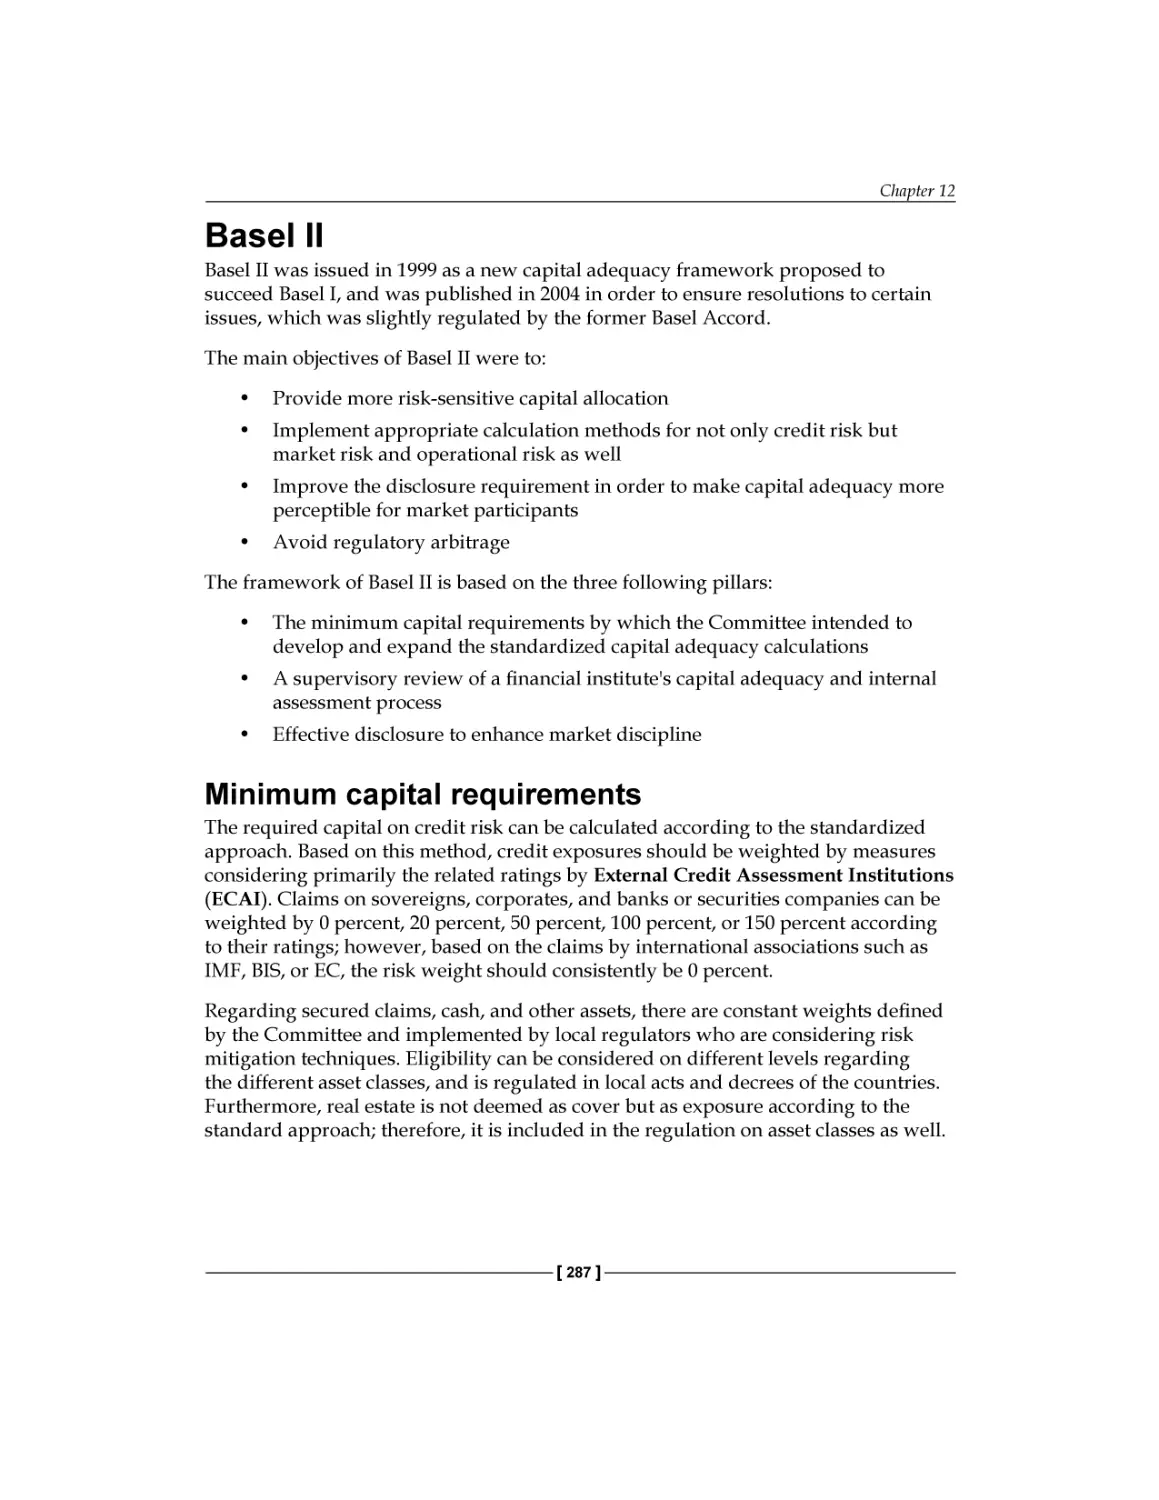 Basel II
Minimum capital requirements